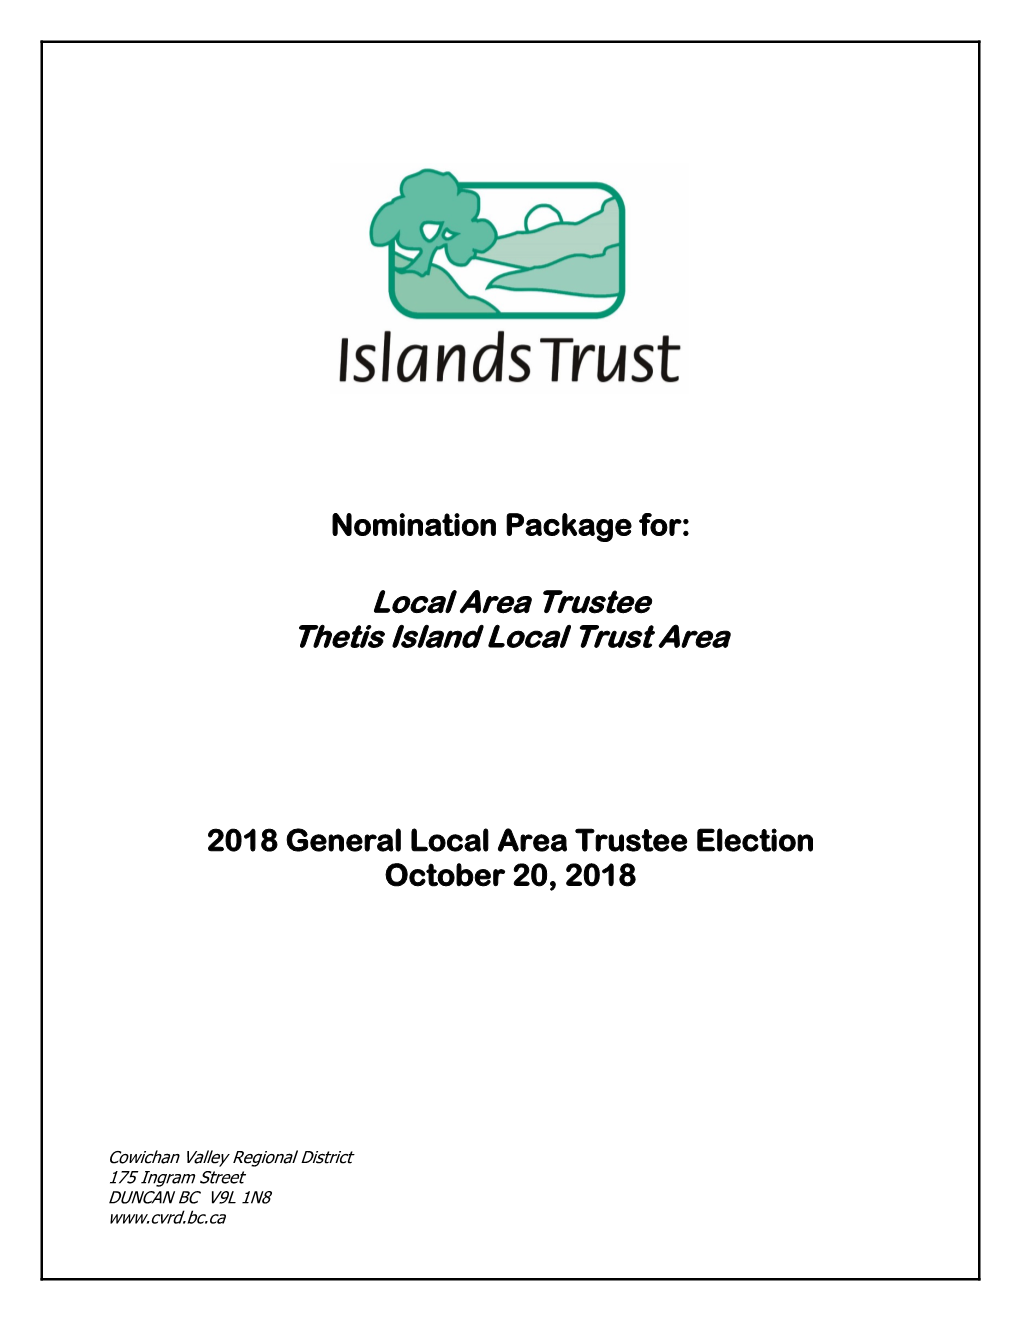 Local Area Trustee Thetis Island Local Trust Area